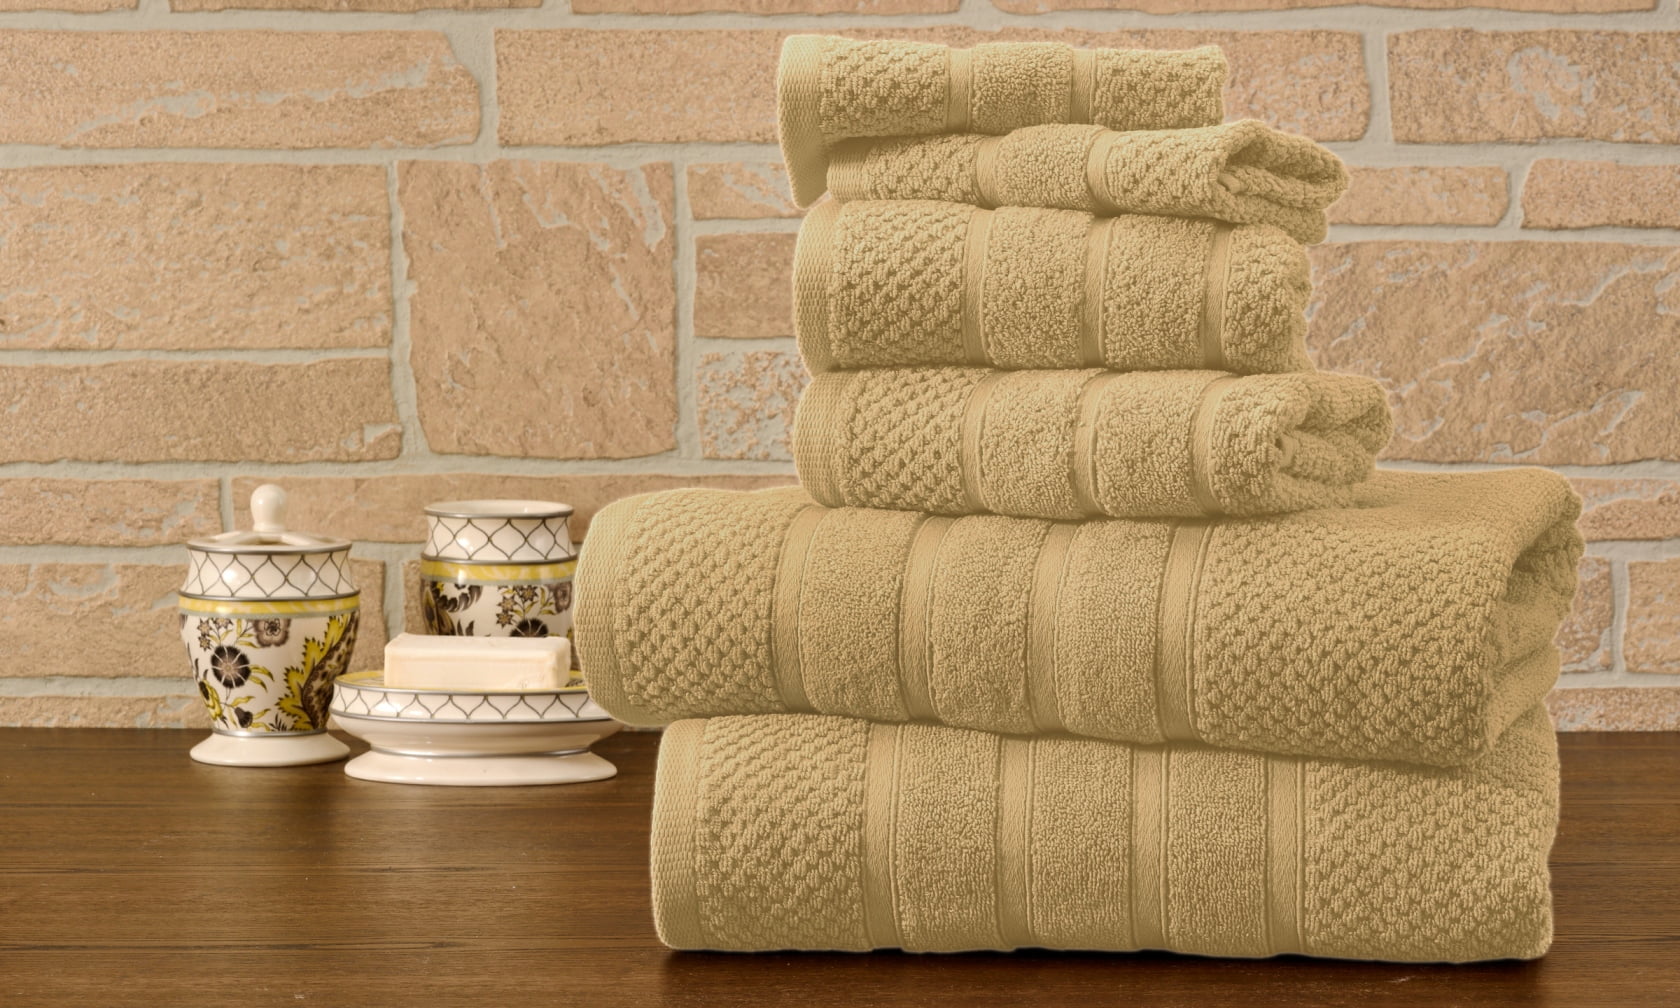 Bibb Home 6 Piece Egyptian Cotton Towel Set - 12 Colors - Solid Linen 